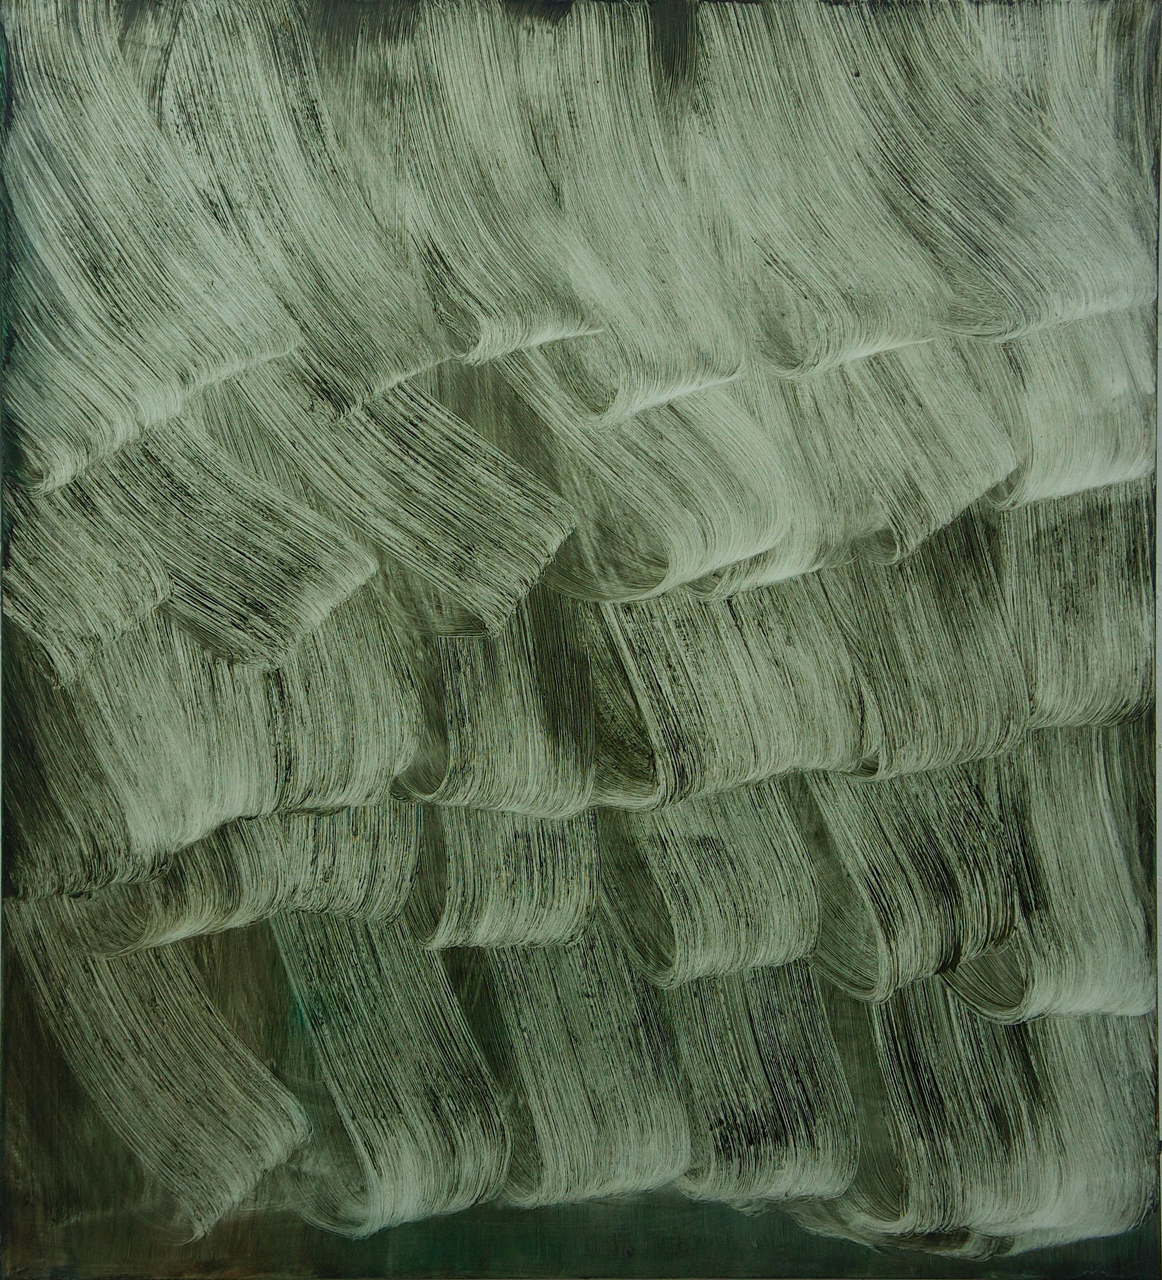 Isa Dahl, Wanderung, 2014, Öl auf Leinwand, 210 cm x 190 cm, Preis auf Anfrage, dai171kü